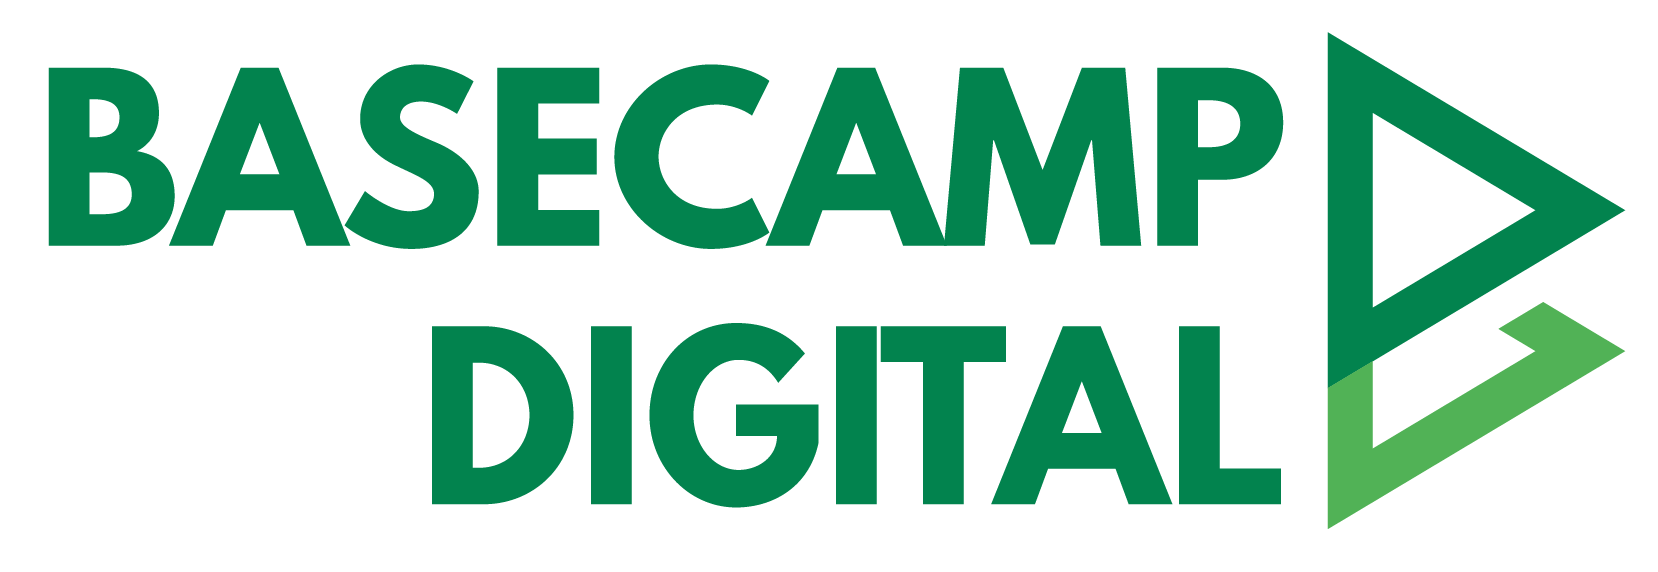 BaseCamp Digital - Digtial Marketing Courses in Andheri, Mumbai